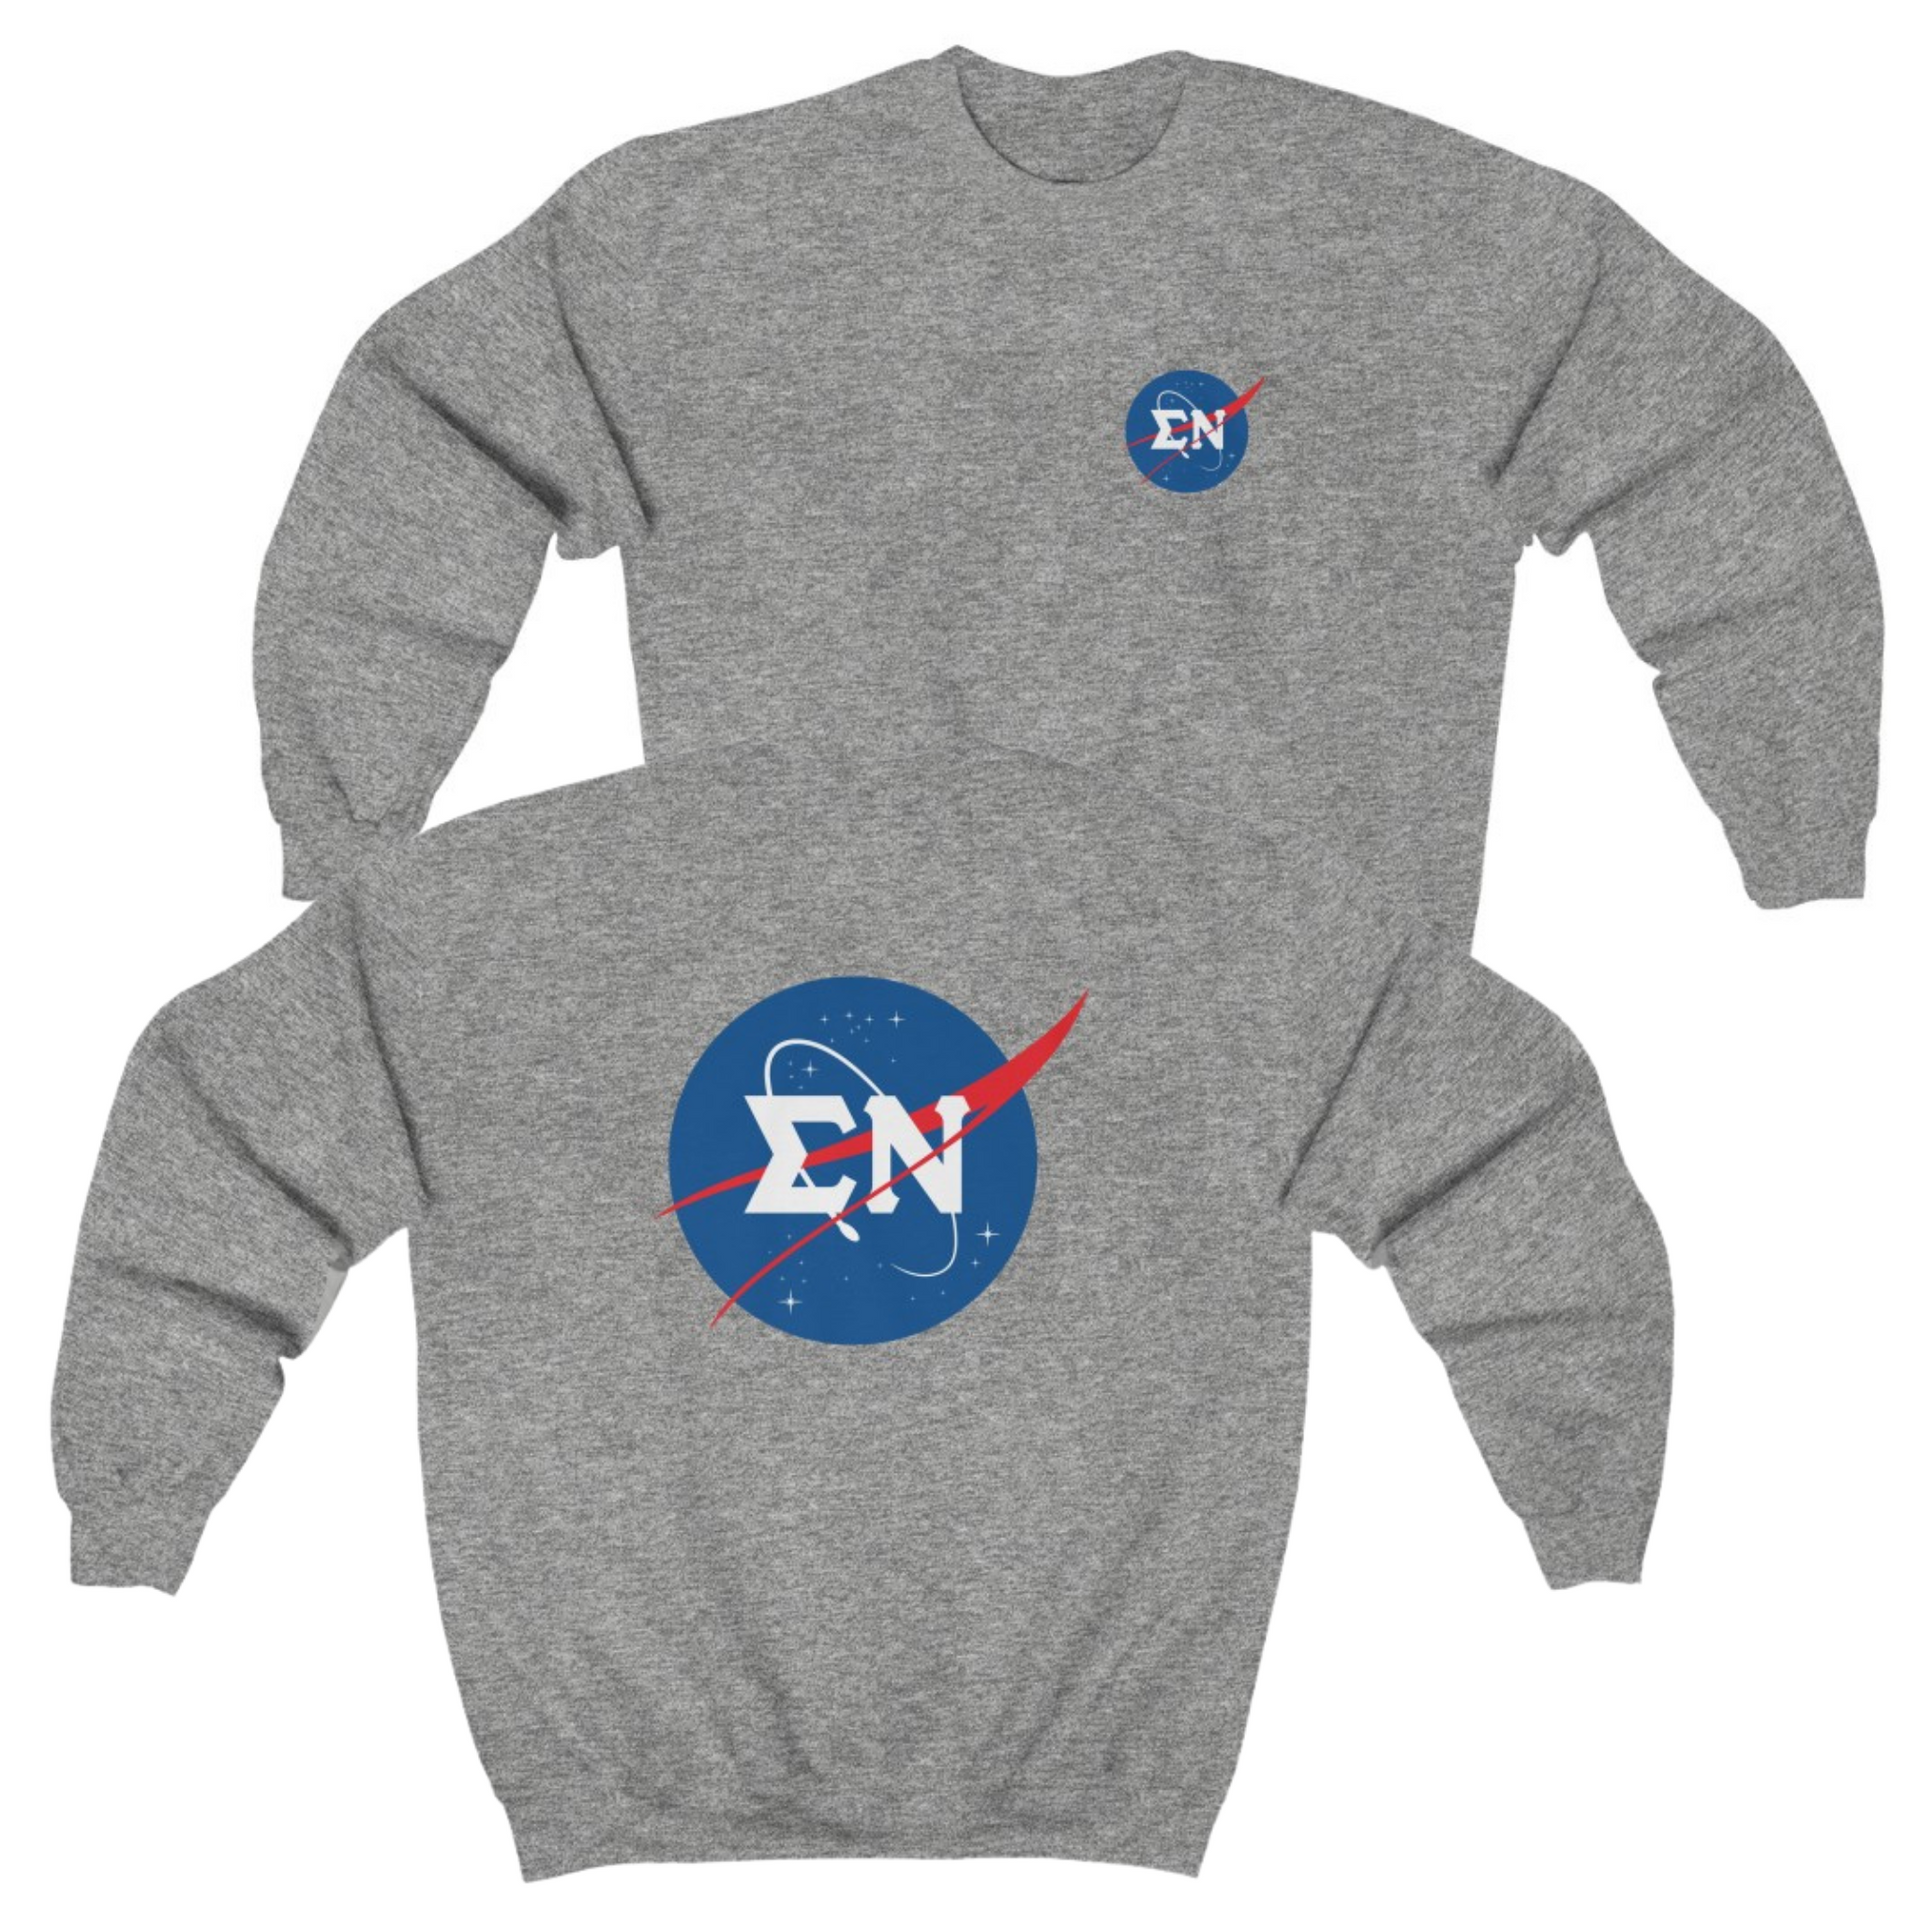 Grey Sigma Nu Graphic Crewneck Sweatshirt | Nasa 2.0 | Sigma Nu Clothing, Apparel and Merchandise